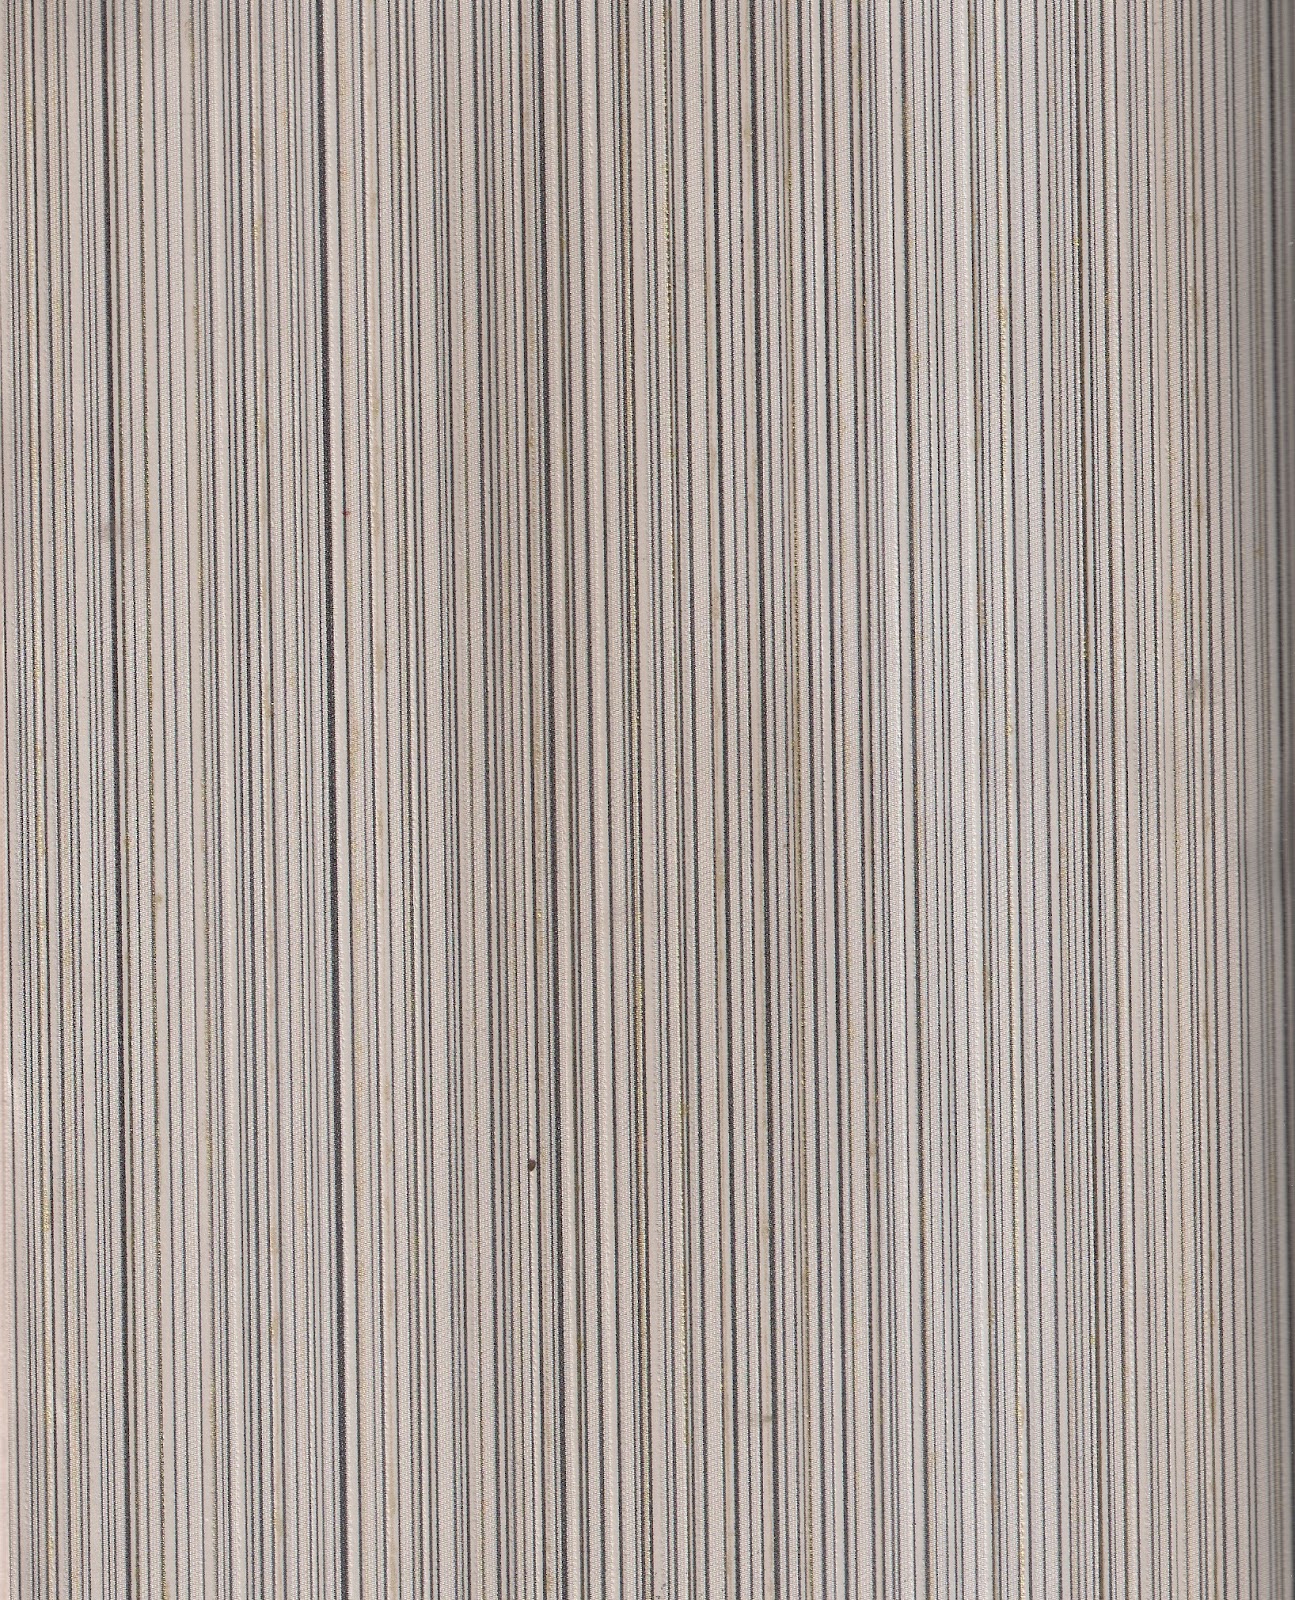 홀로그램 벽지,선,나무,베이지